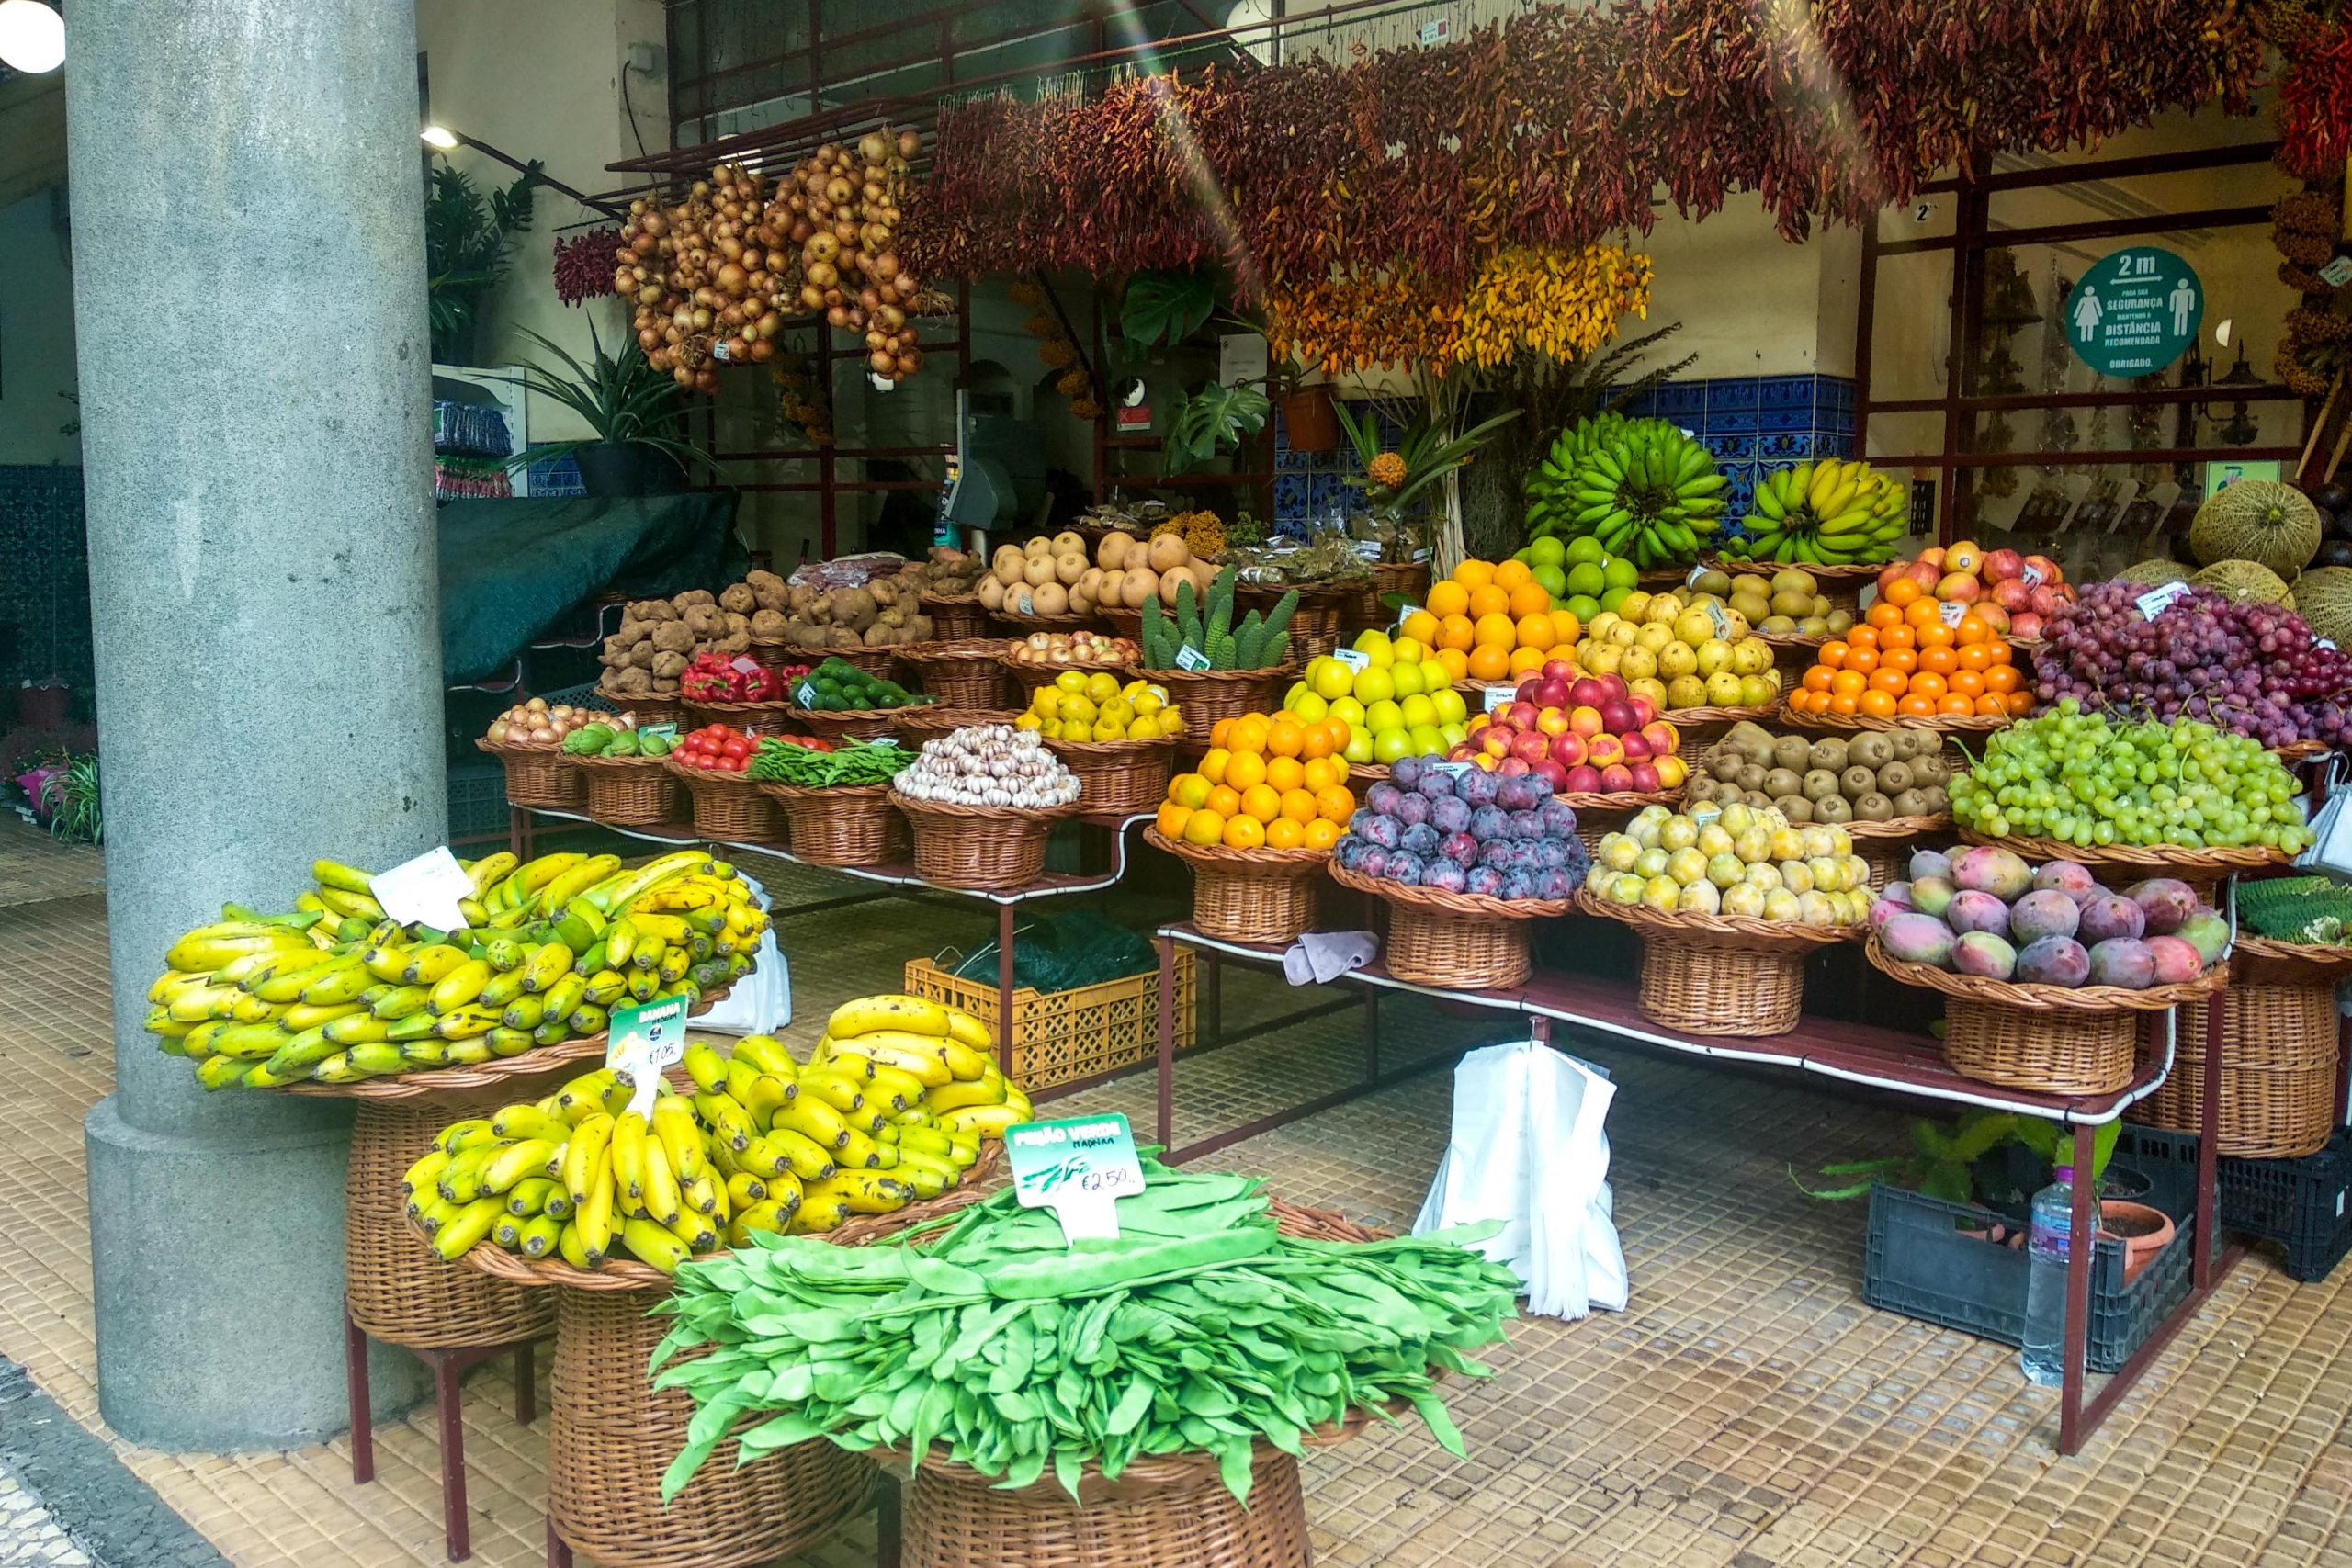 Banca de fruta no Mercado dos Lavradores, no Funchal